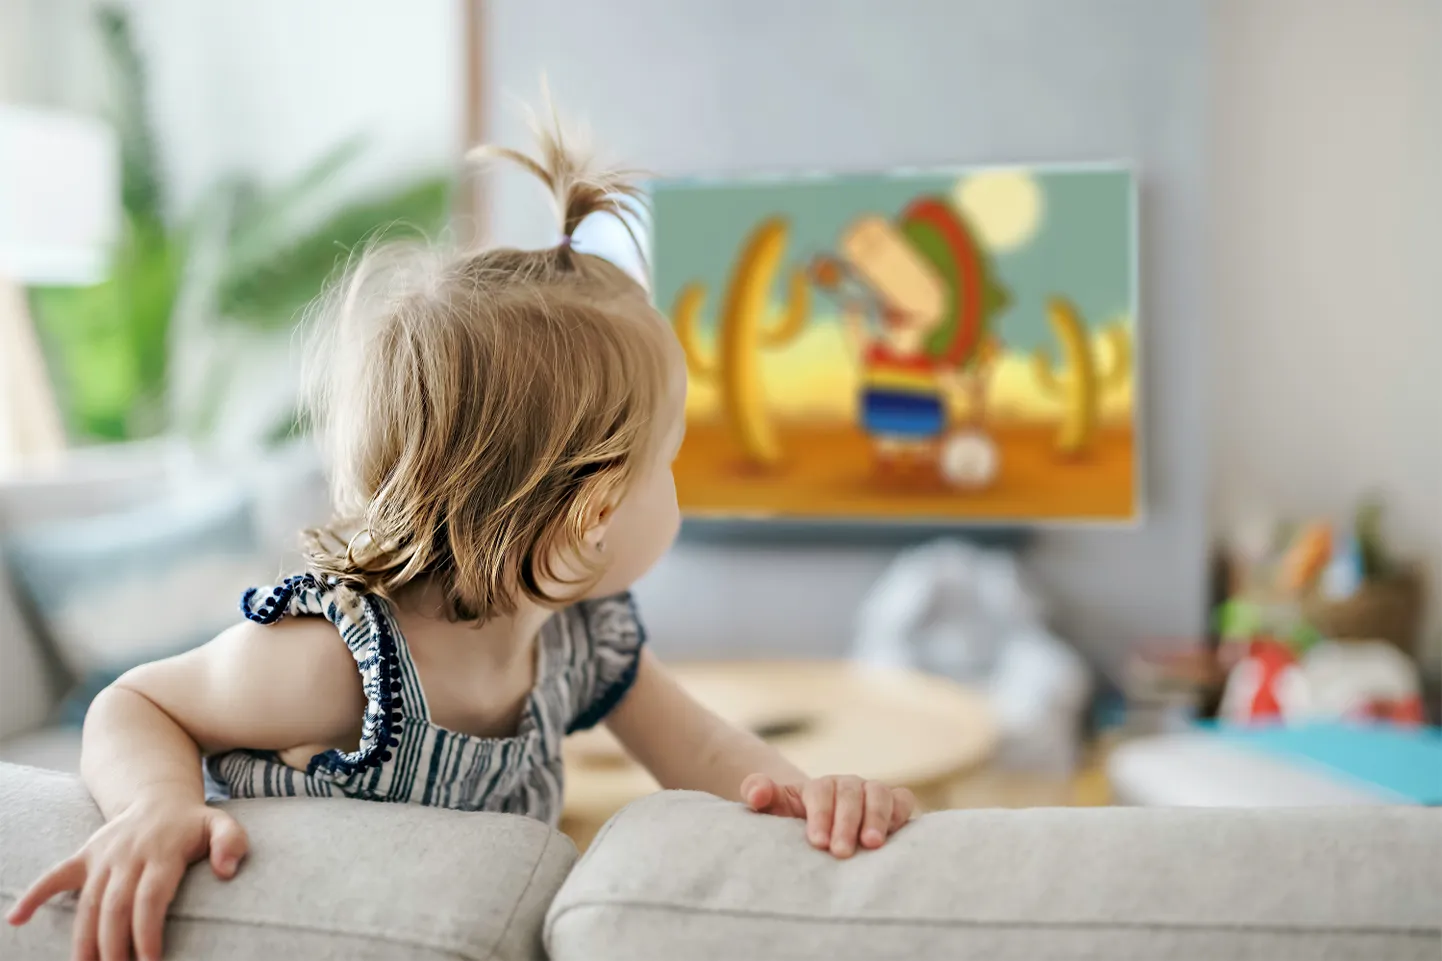 Ребенок смотрит по телевизору рекламу лимонада.